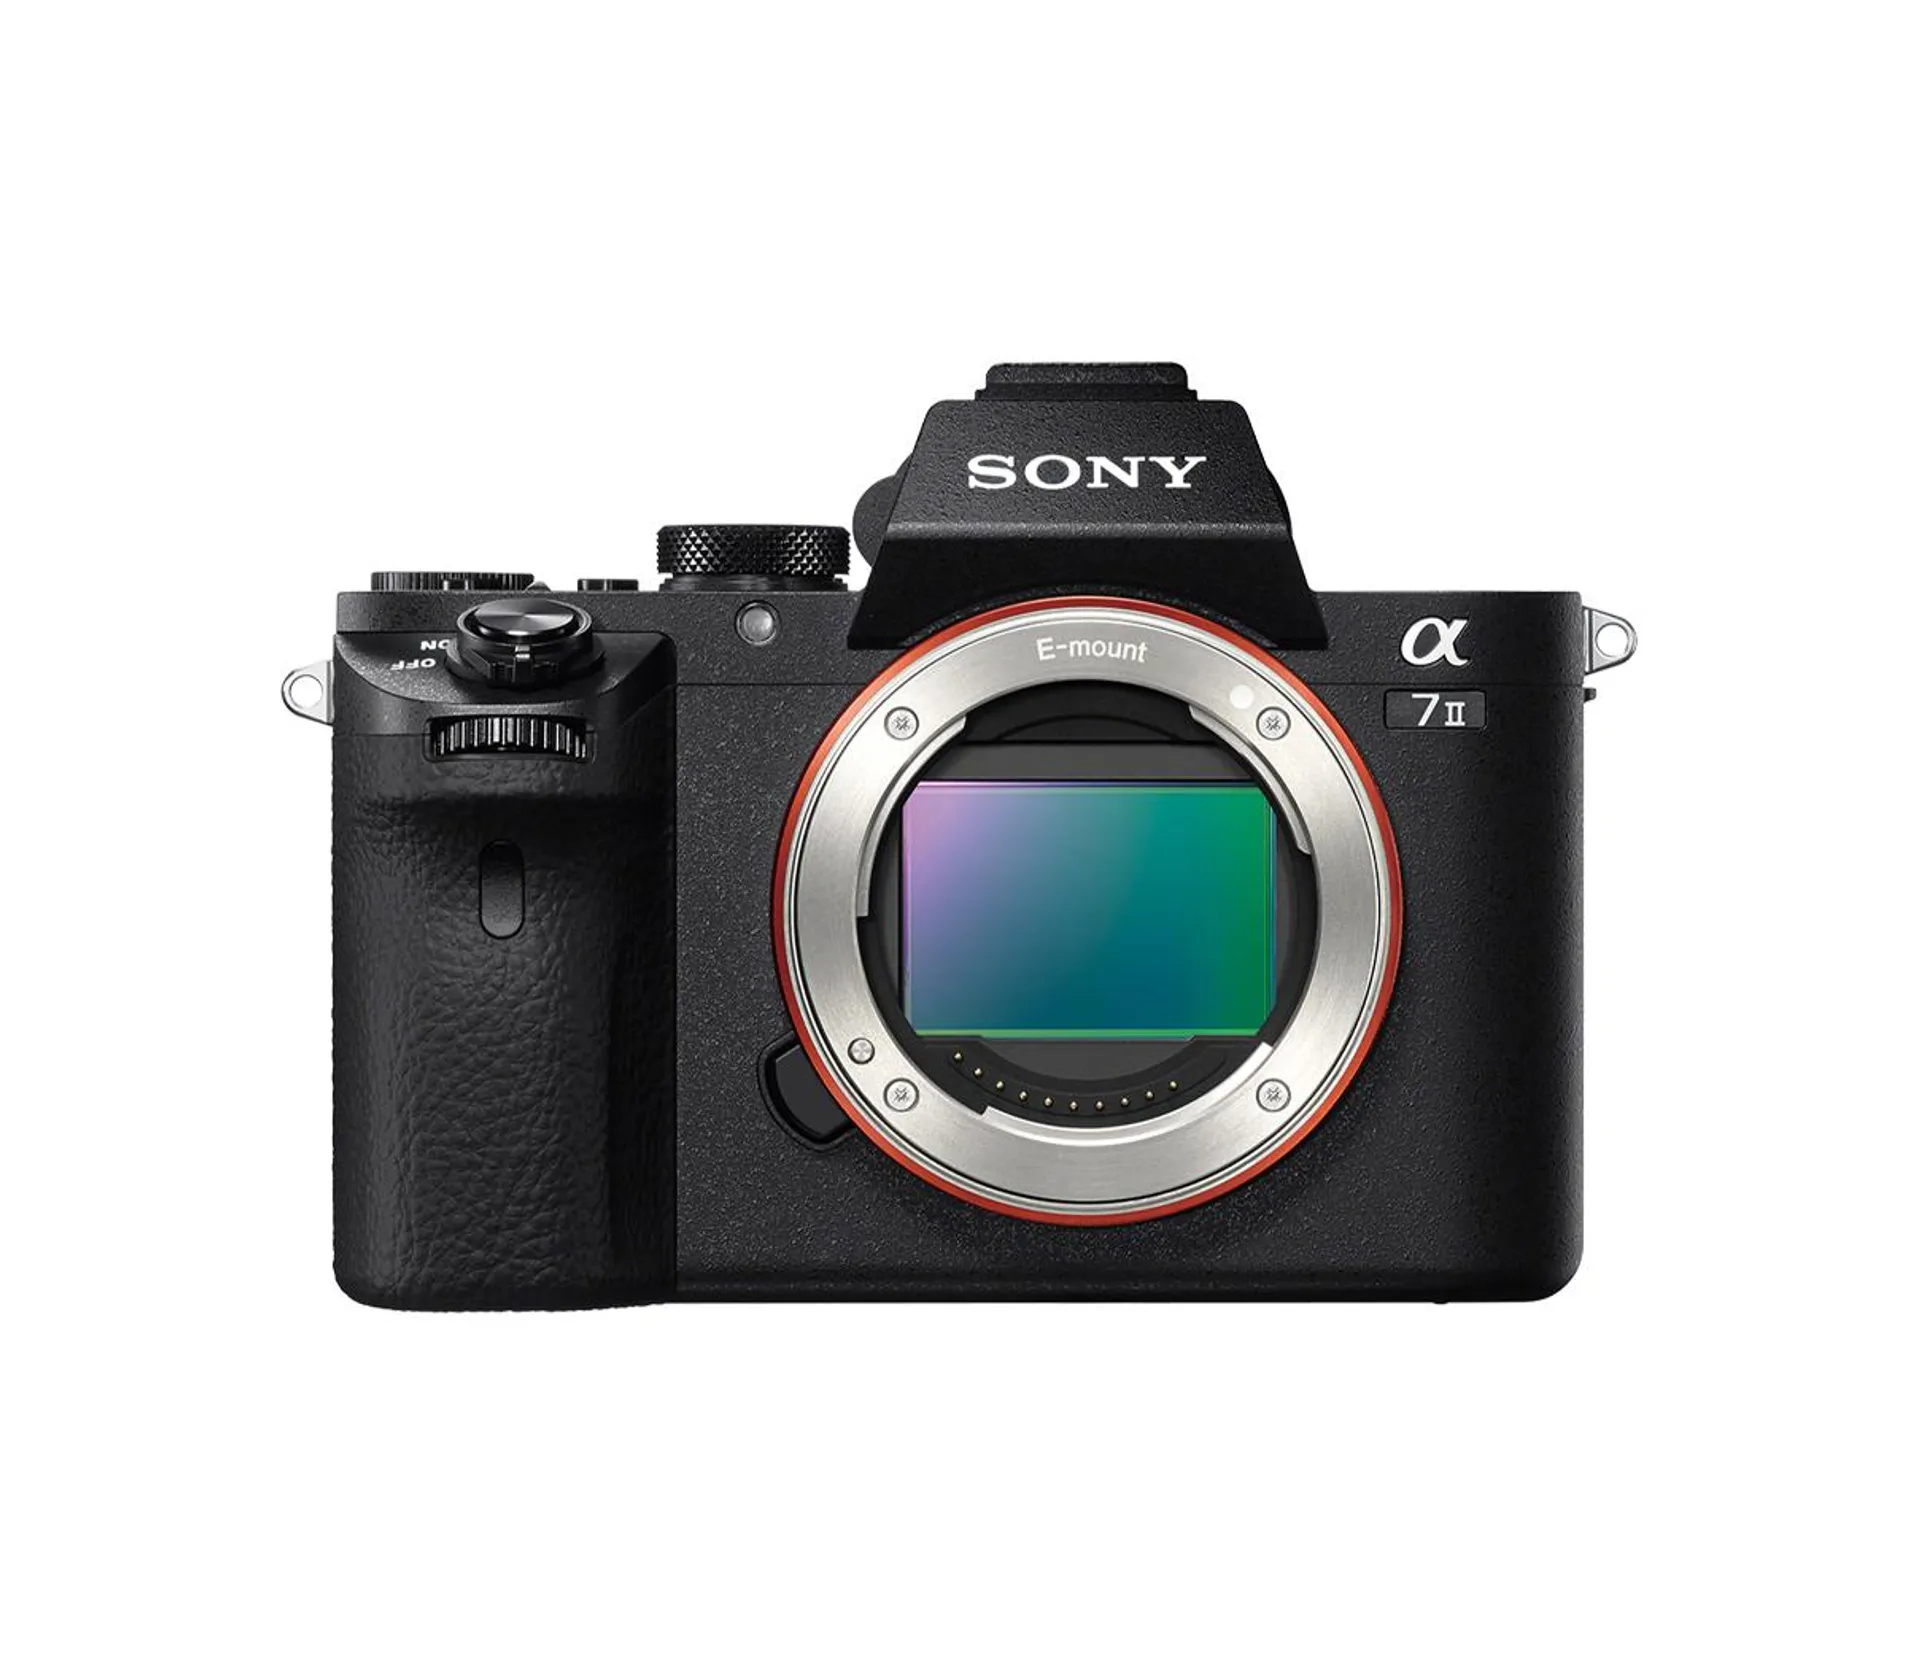 Alpha 7 II - Full-frame Interchangeable Lens Camera 24.2MP, 5FPS, Full HD 1080p